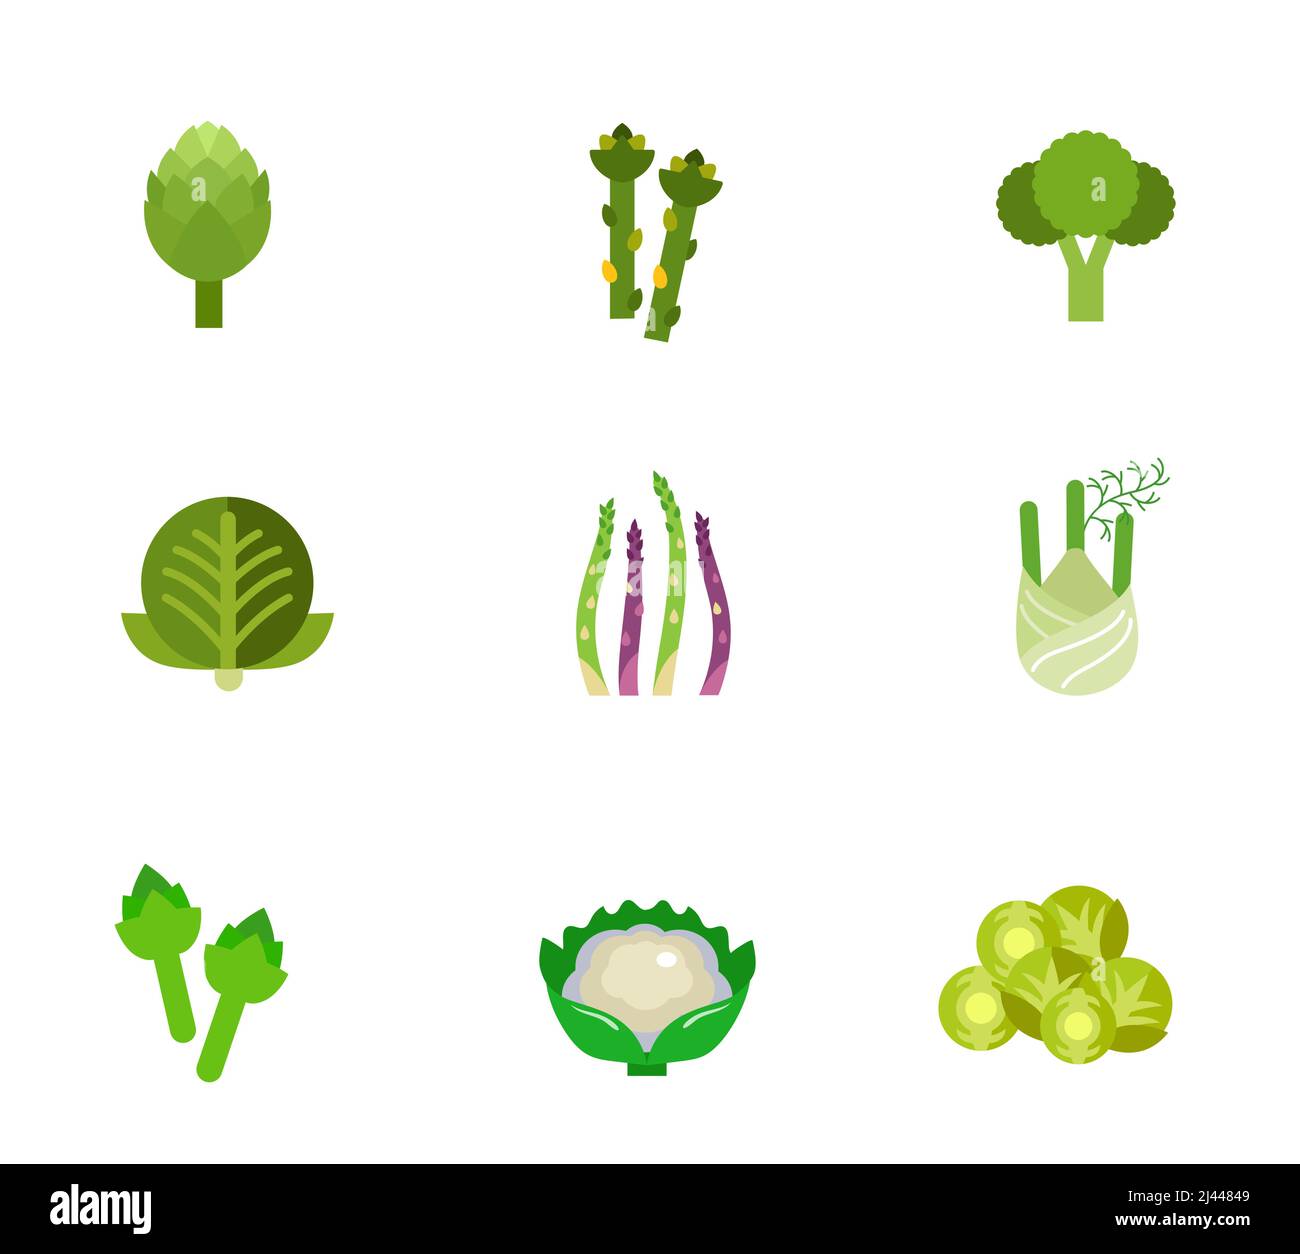 Jeu d'icônes de légumes verts. Artichaut Asparagus Broccoli Cabbage Asparagus tige Fennel Artichaut chou-fleur Brussel sprout Illustration de Vecteur